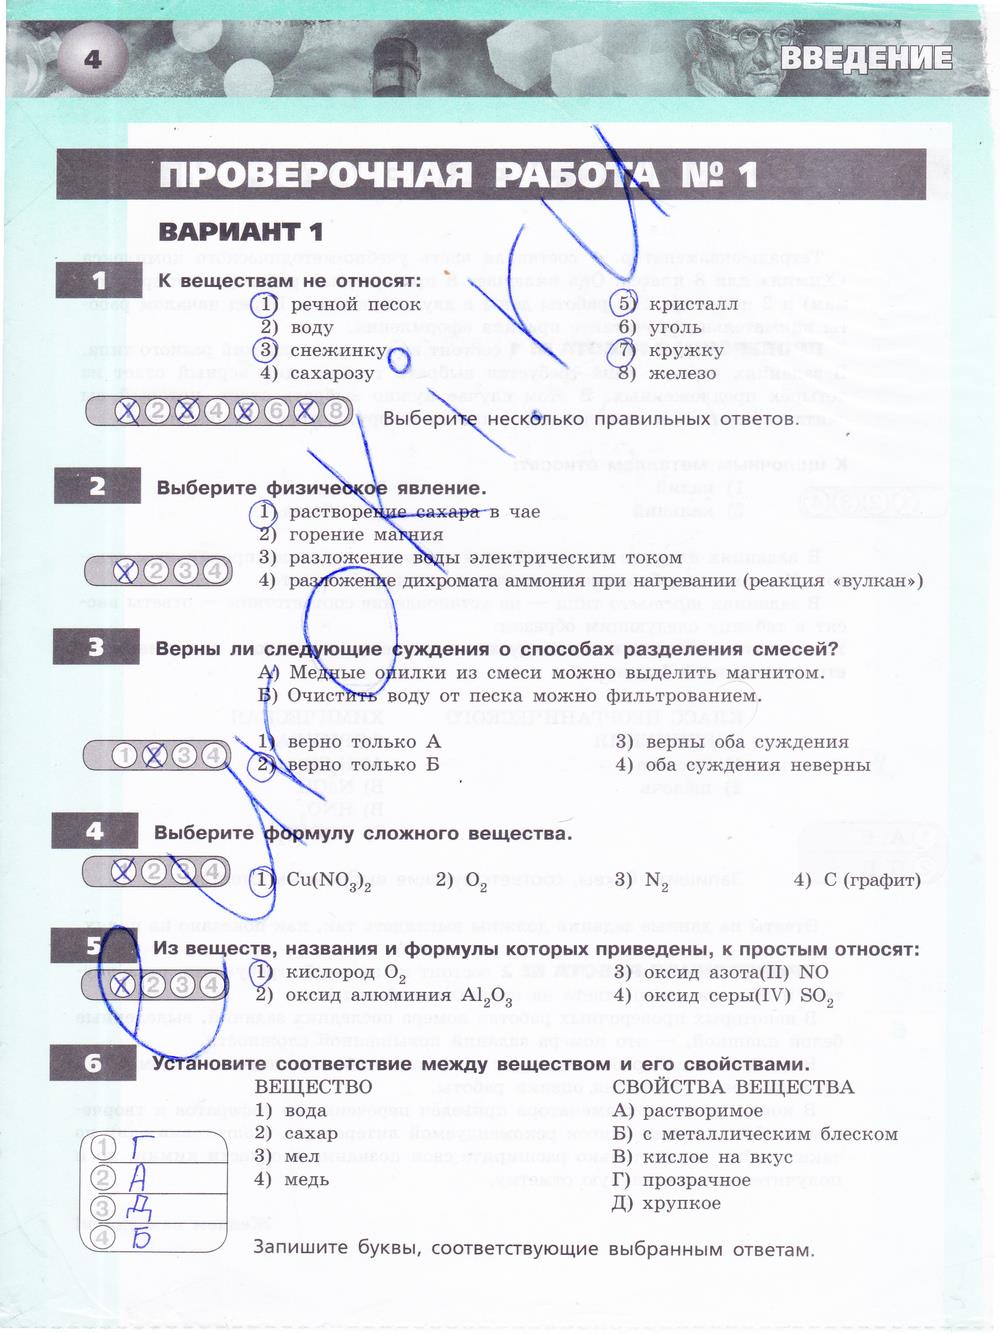 гдз 8 класс тетрадь-экзаменатор страница 4 химия Бобылева, Бирюлина